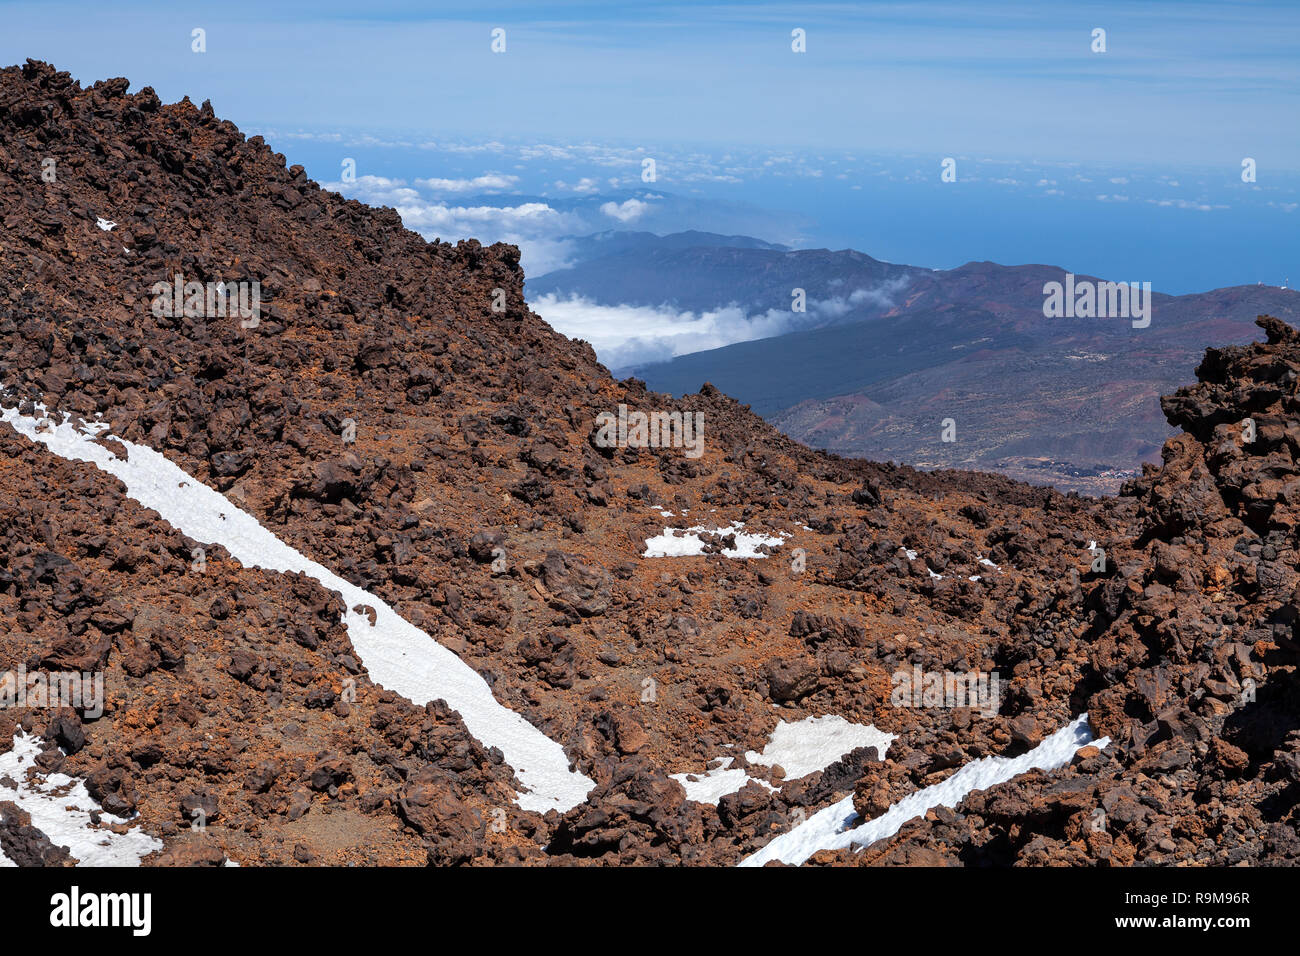 La neige en haut du volcan Teide, Tenerife, Canaries, Espagne Banque D'Images